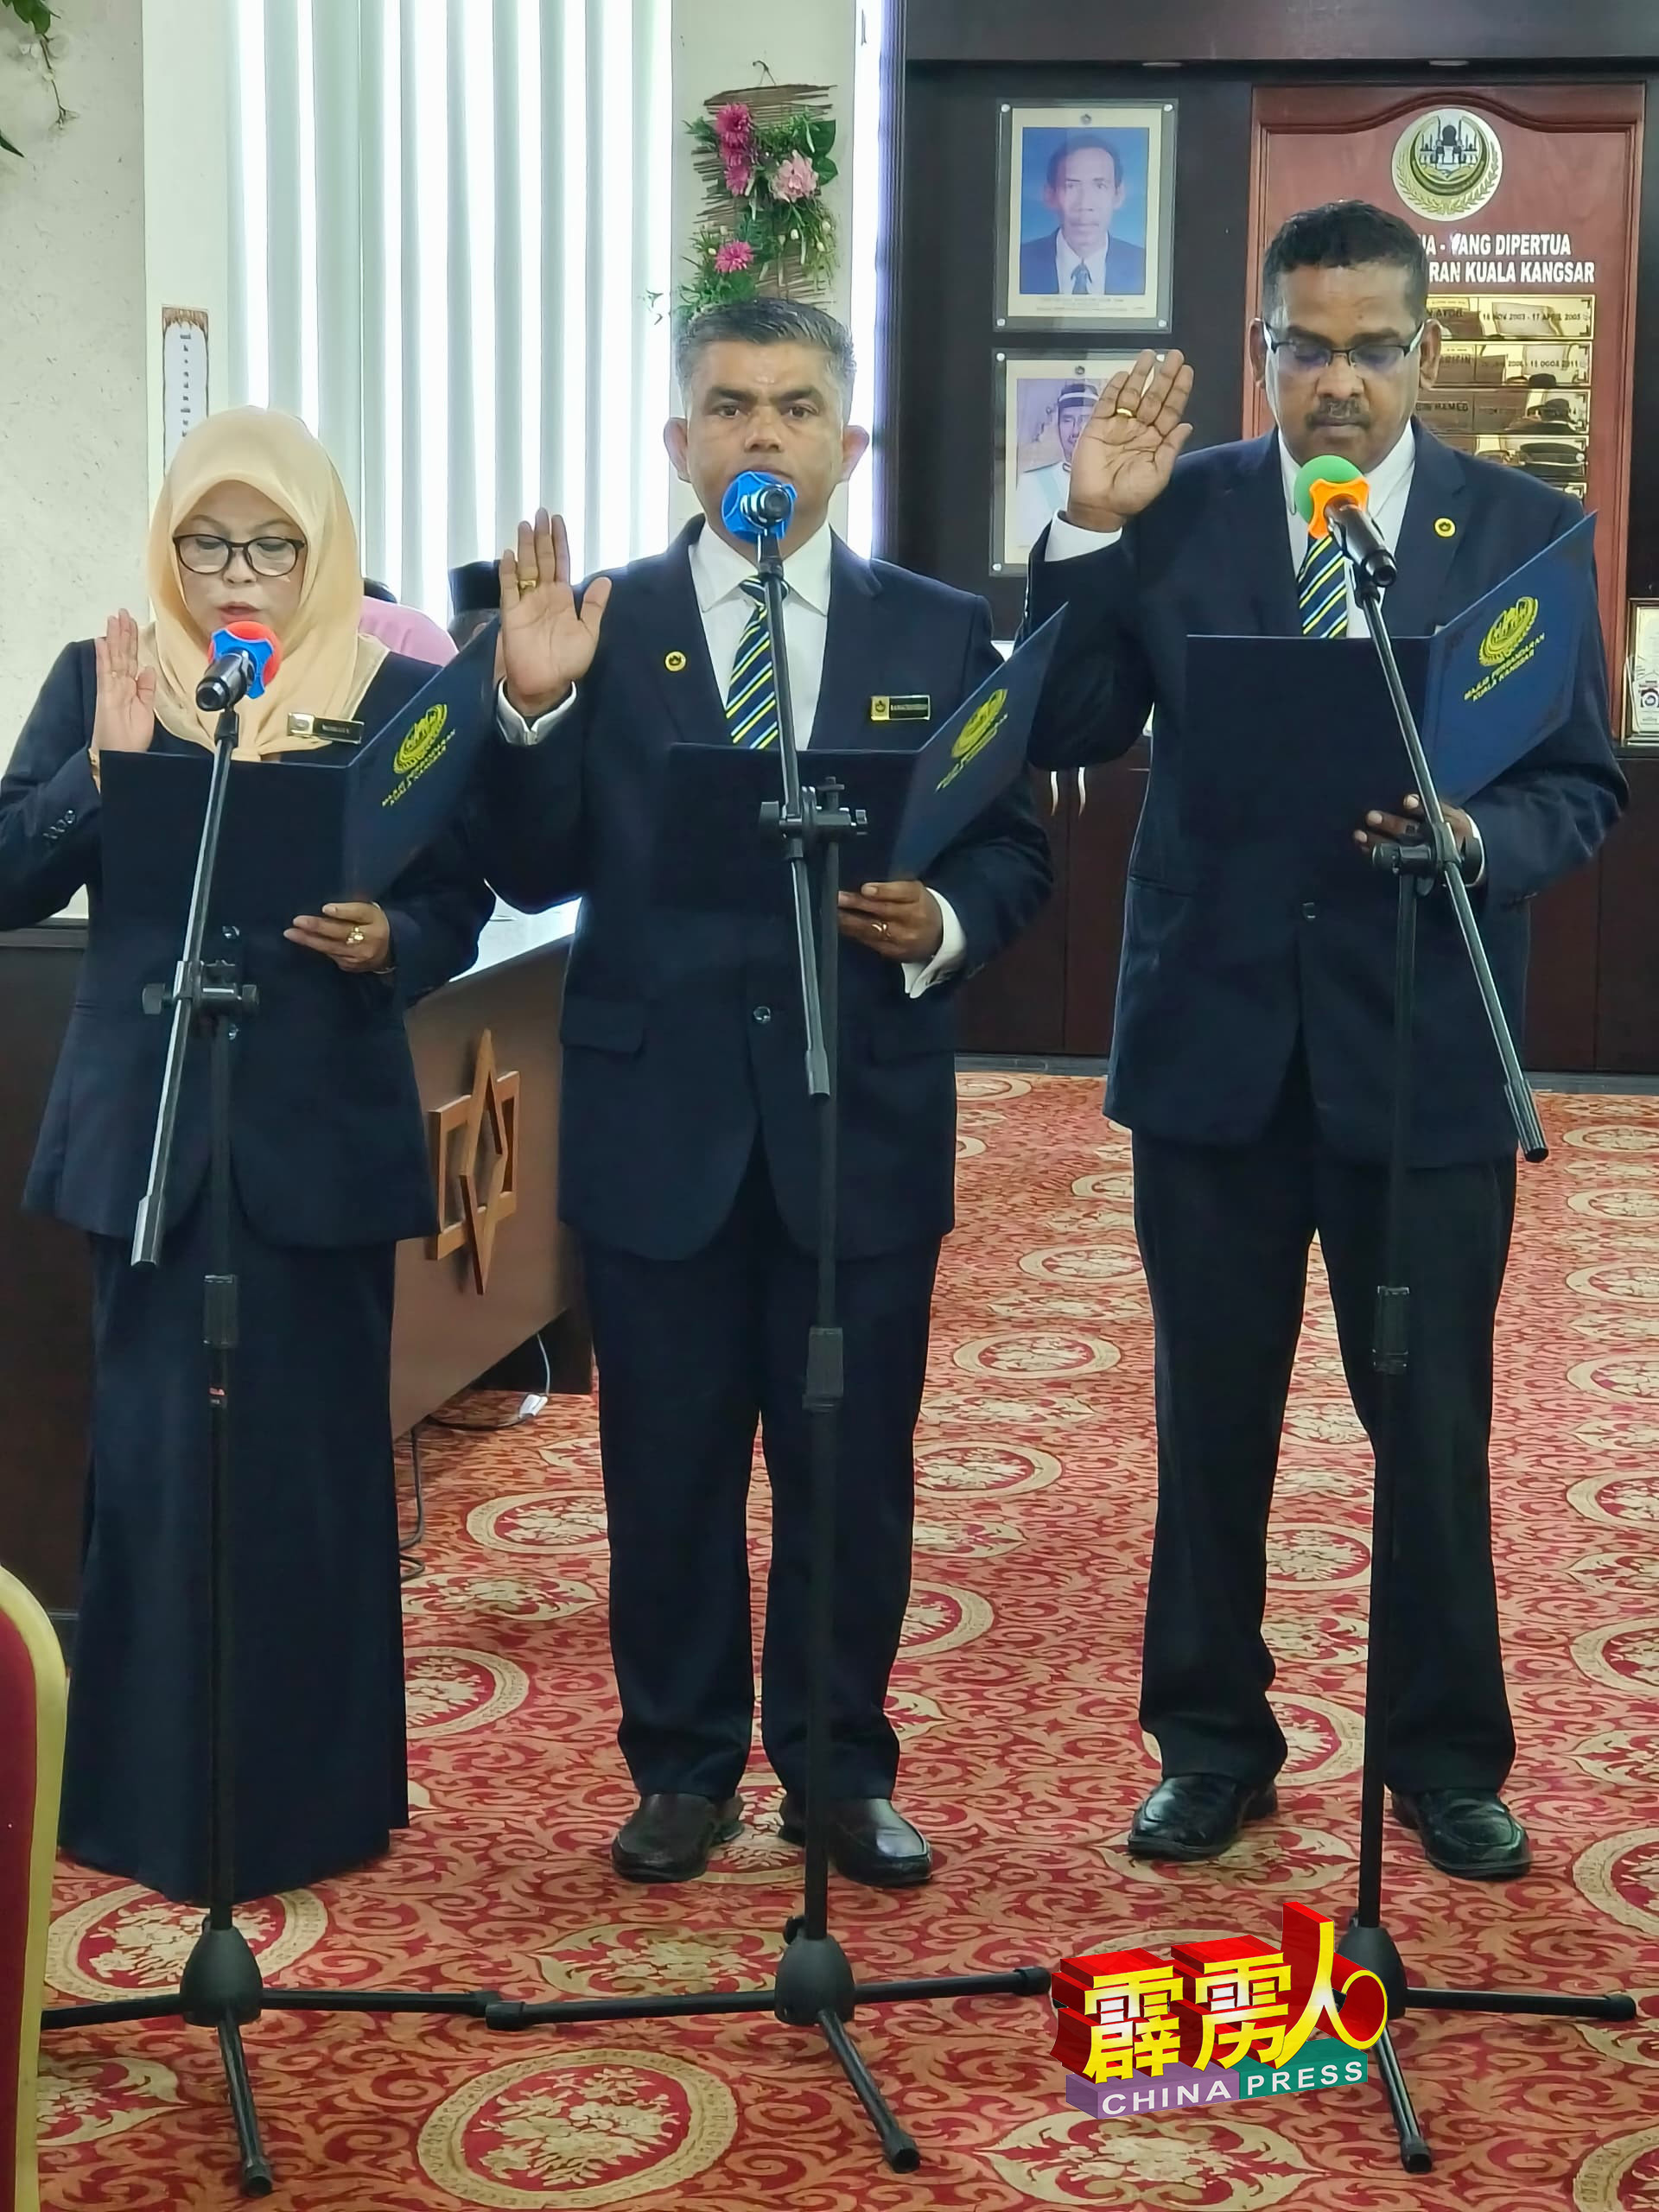 国大党今次派出两员担任江沙市议员，壮大国阵势力。右起阿扎、拉马贞德兰及罗哈佑，共同宣誓就职。